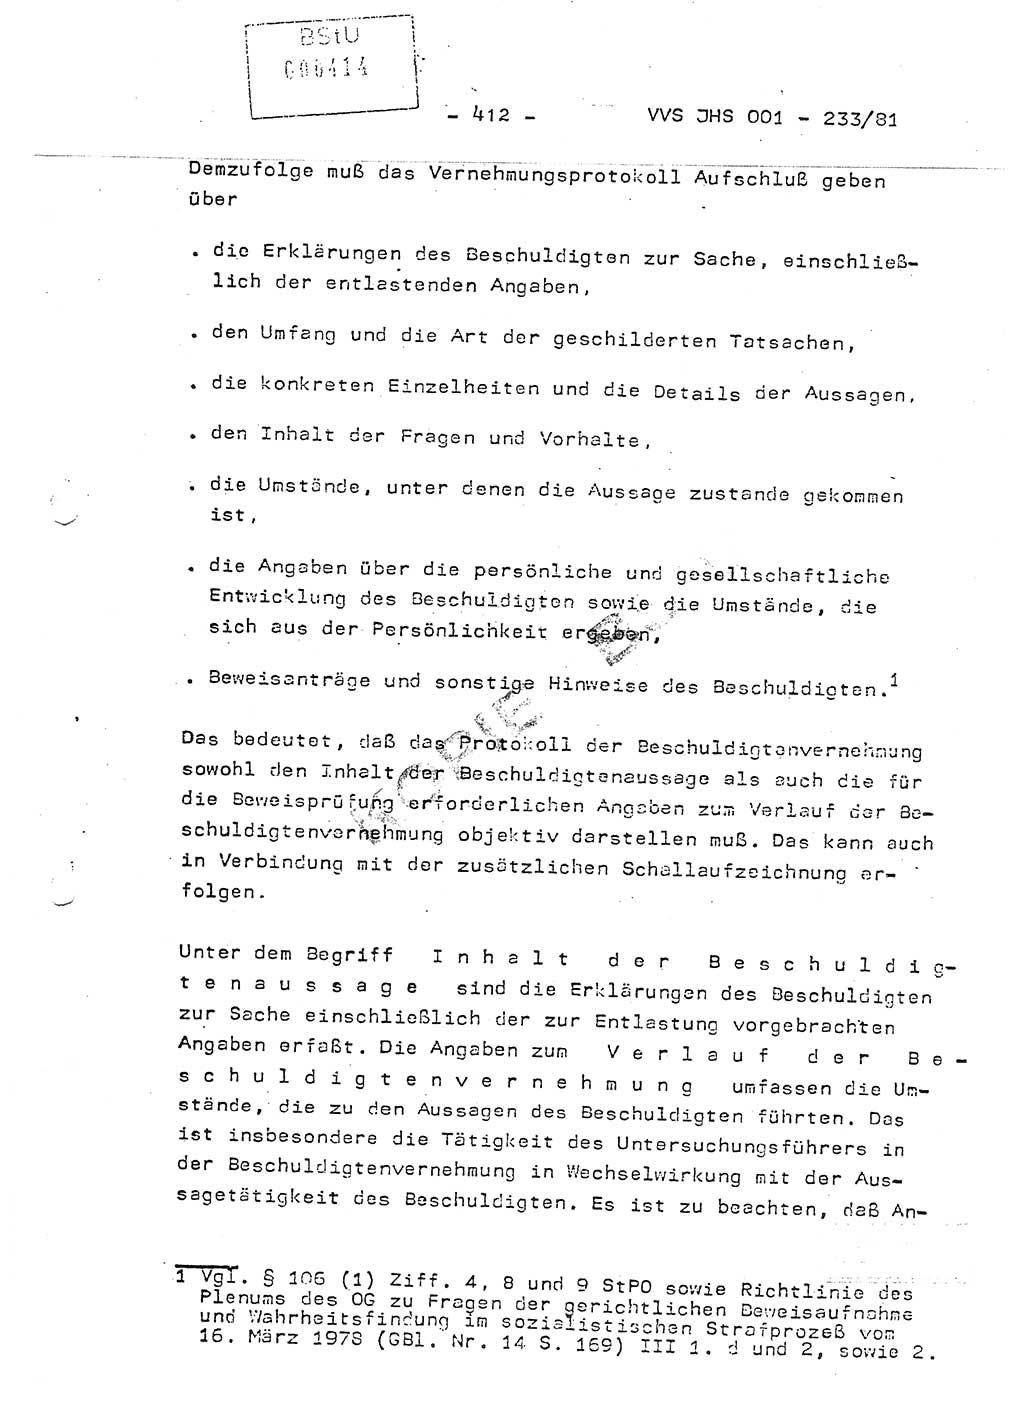 Dissertation Oberstleutnant Horst Zank (JHS), Oberstleutnant Dr. Karl-Heinz Knoblauch (JHS), Oberstleutnant Gustav-Adolf Kowalewski (HA Ⅸ), Oberstleutnant Wolfgang Plötner (HA Ⅸ), Ministerium für Staatssicherheit (MfS) [Deutsche Demokratische Republik (DDR)], Juristische Hochschule (JHS), Vertrauliche Verschlußsache (VVS) o001-233/81, Potsdam 1981, Blatt 412 (Diss. MfS DDR JHS VVS o001-233/81 1981, Bl. 412)